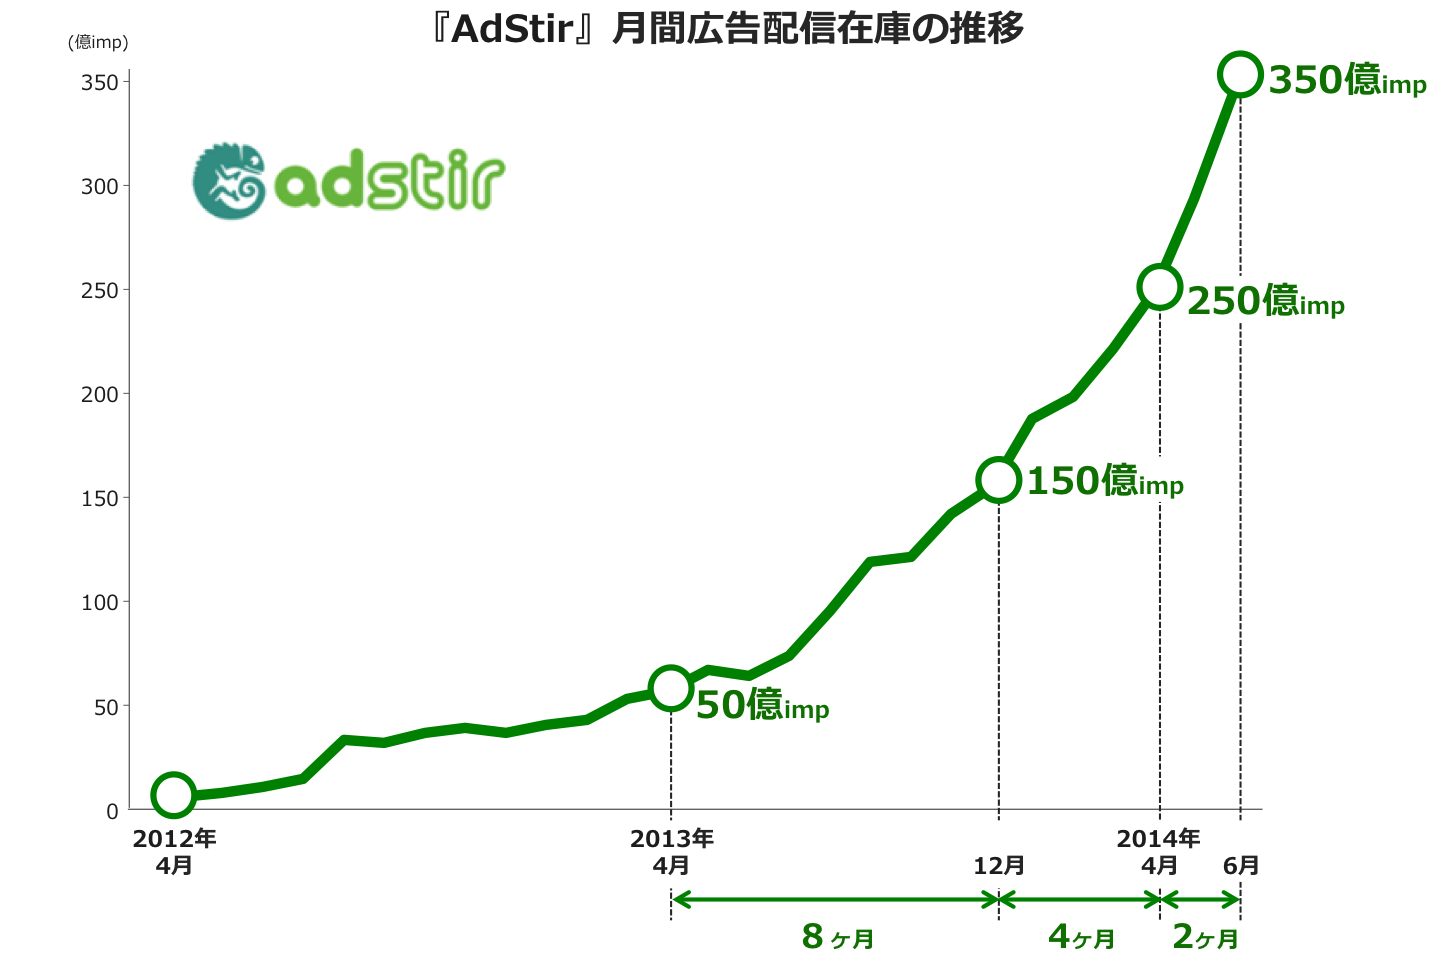 ユナイテッド、SSP『AdStir(アドステア)』、2014年6月に月間広告配信在庫が350億imp(アドインプレッション)を突破